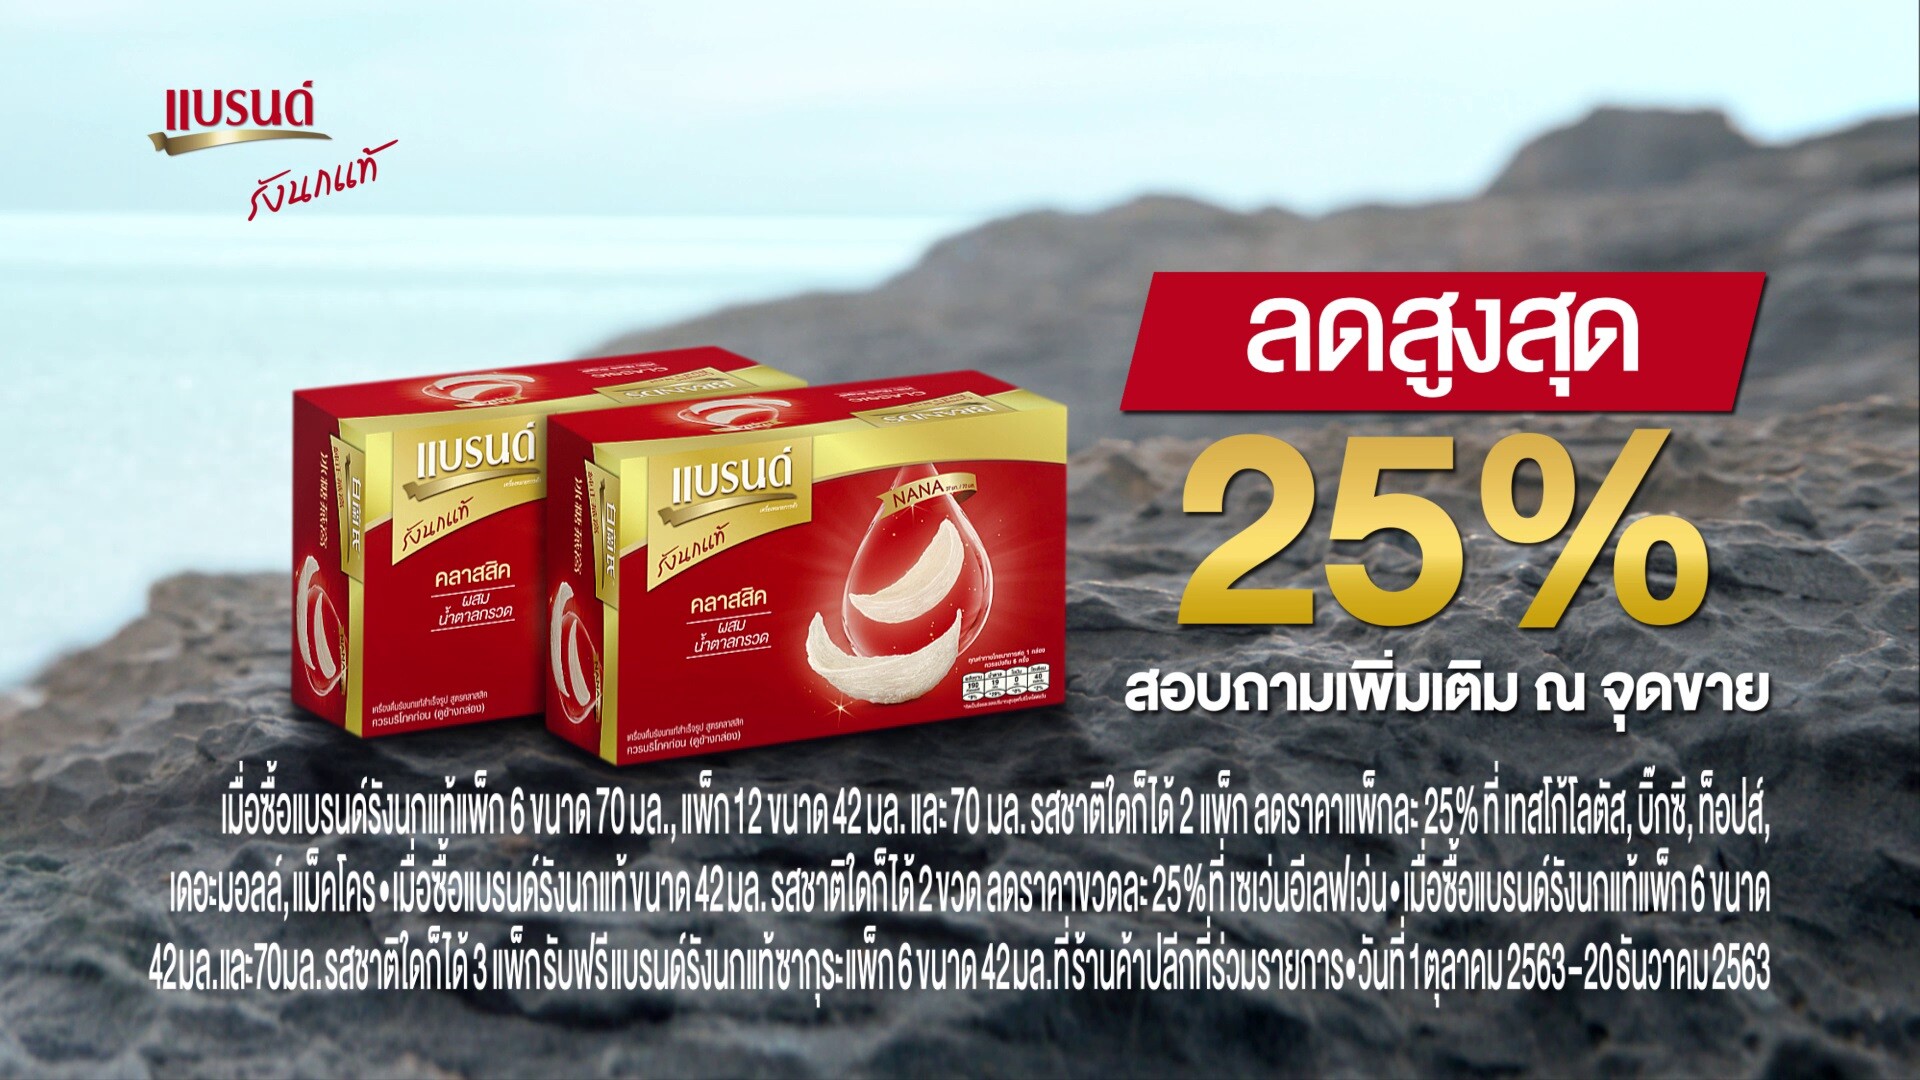 แบรนด์ซันโทรี่  แนะนำ 'แบรนด์รังนกแท้’ โฉมใหม่  พร้อมชูจุดเด่นเป็นเครื่องดื่มรังนกแท้รายแรกในไทยที่มี 'NANA’ (นานะ) ทุกขวด และทุกสูตร